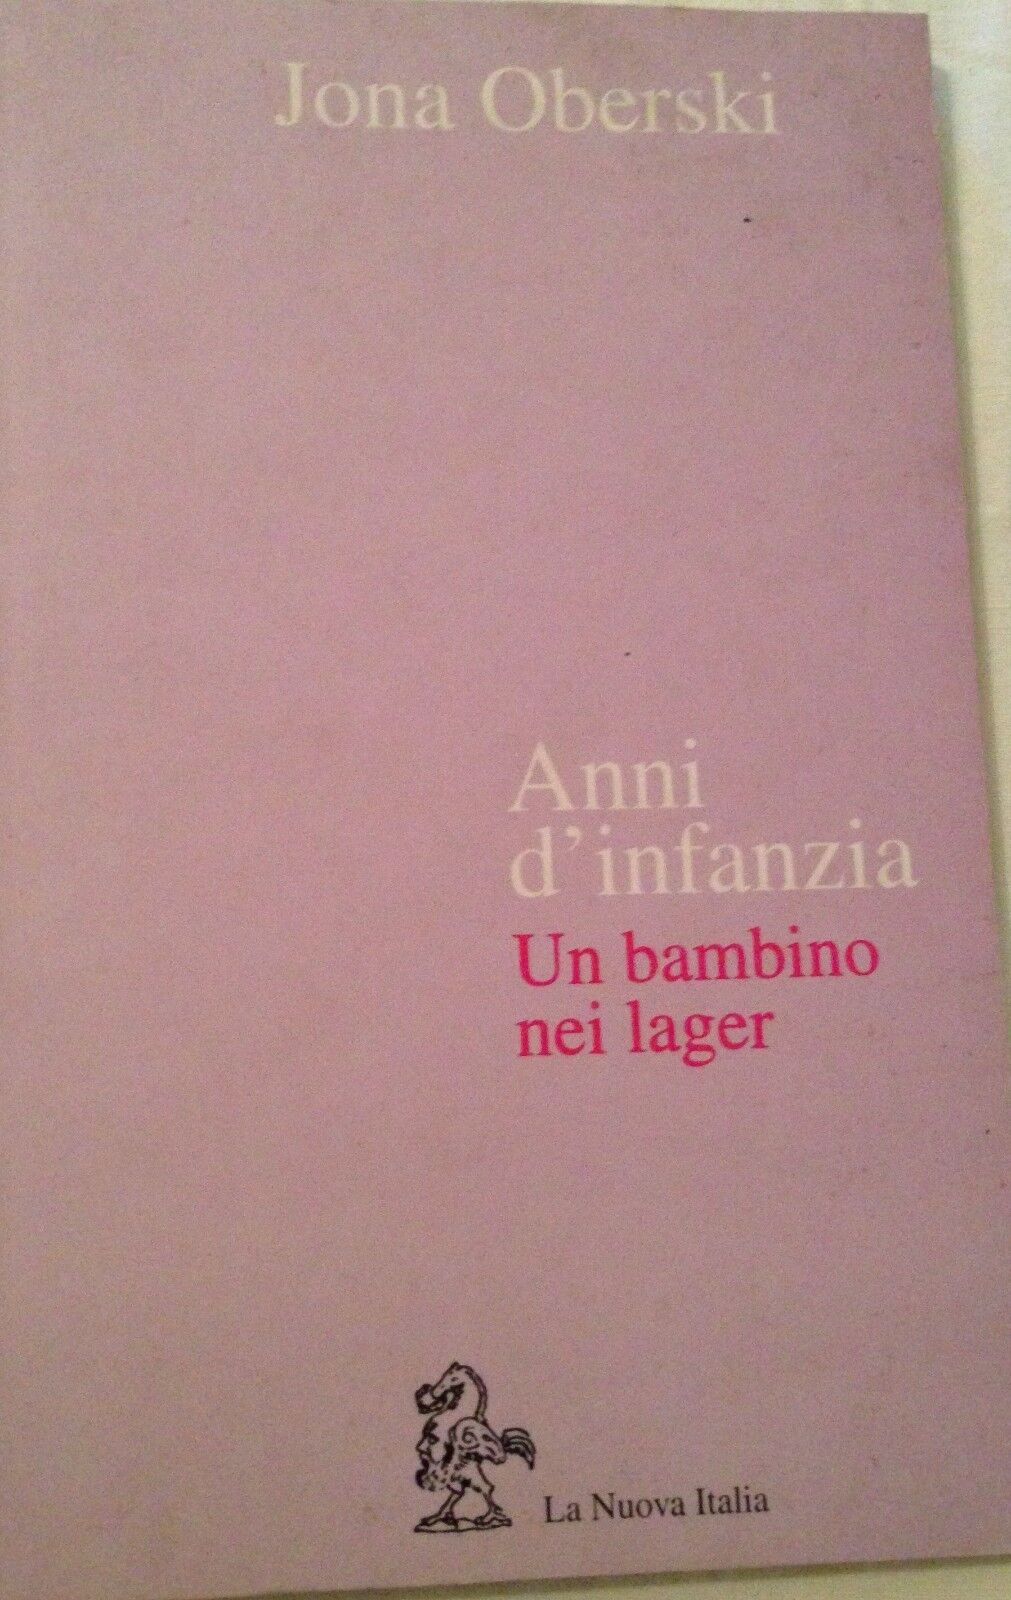 Anni d'infanzia - Jona Oberski - La nuova italia - 1995 - M libro usato